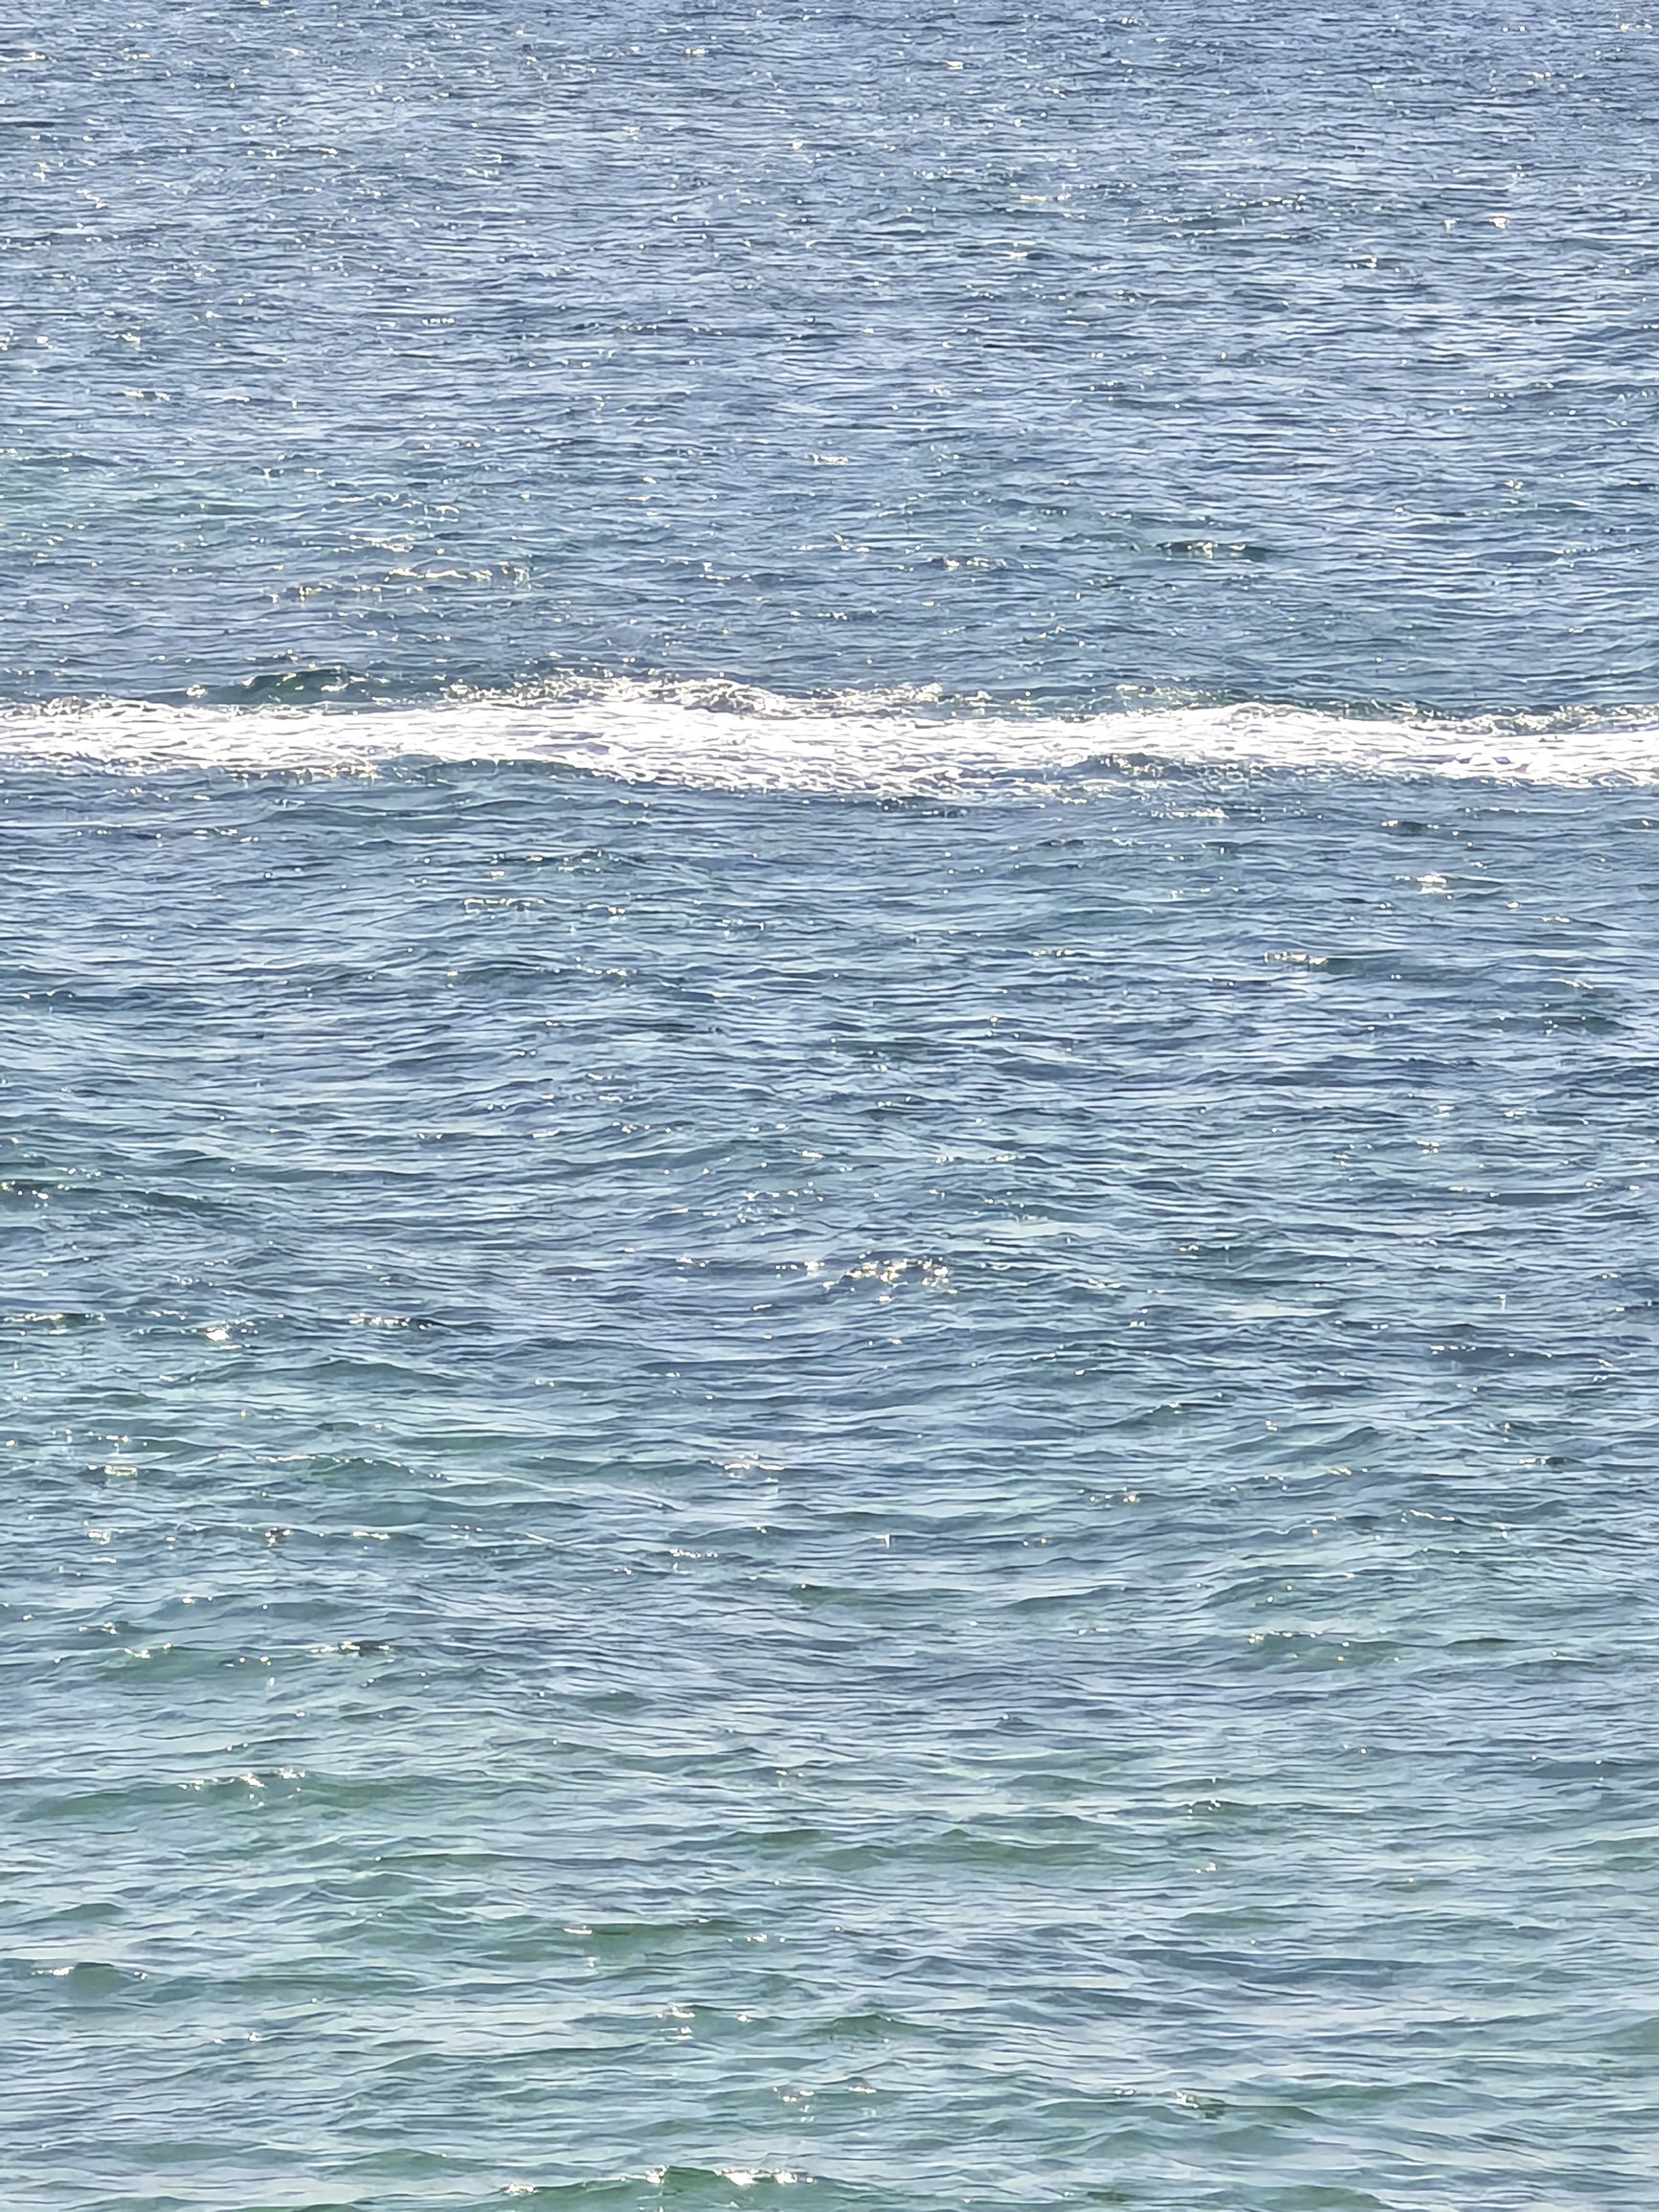 🌊普吉岛的海是真的很能“散班味”🥺